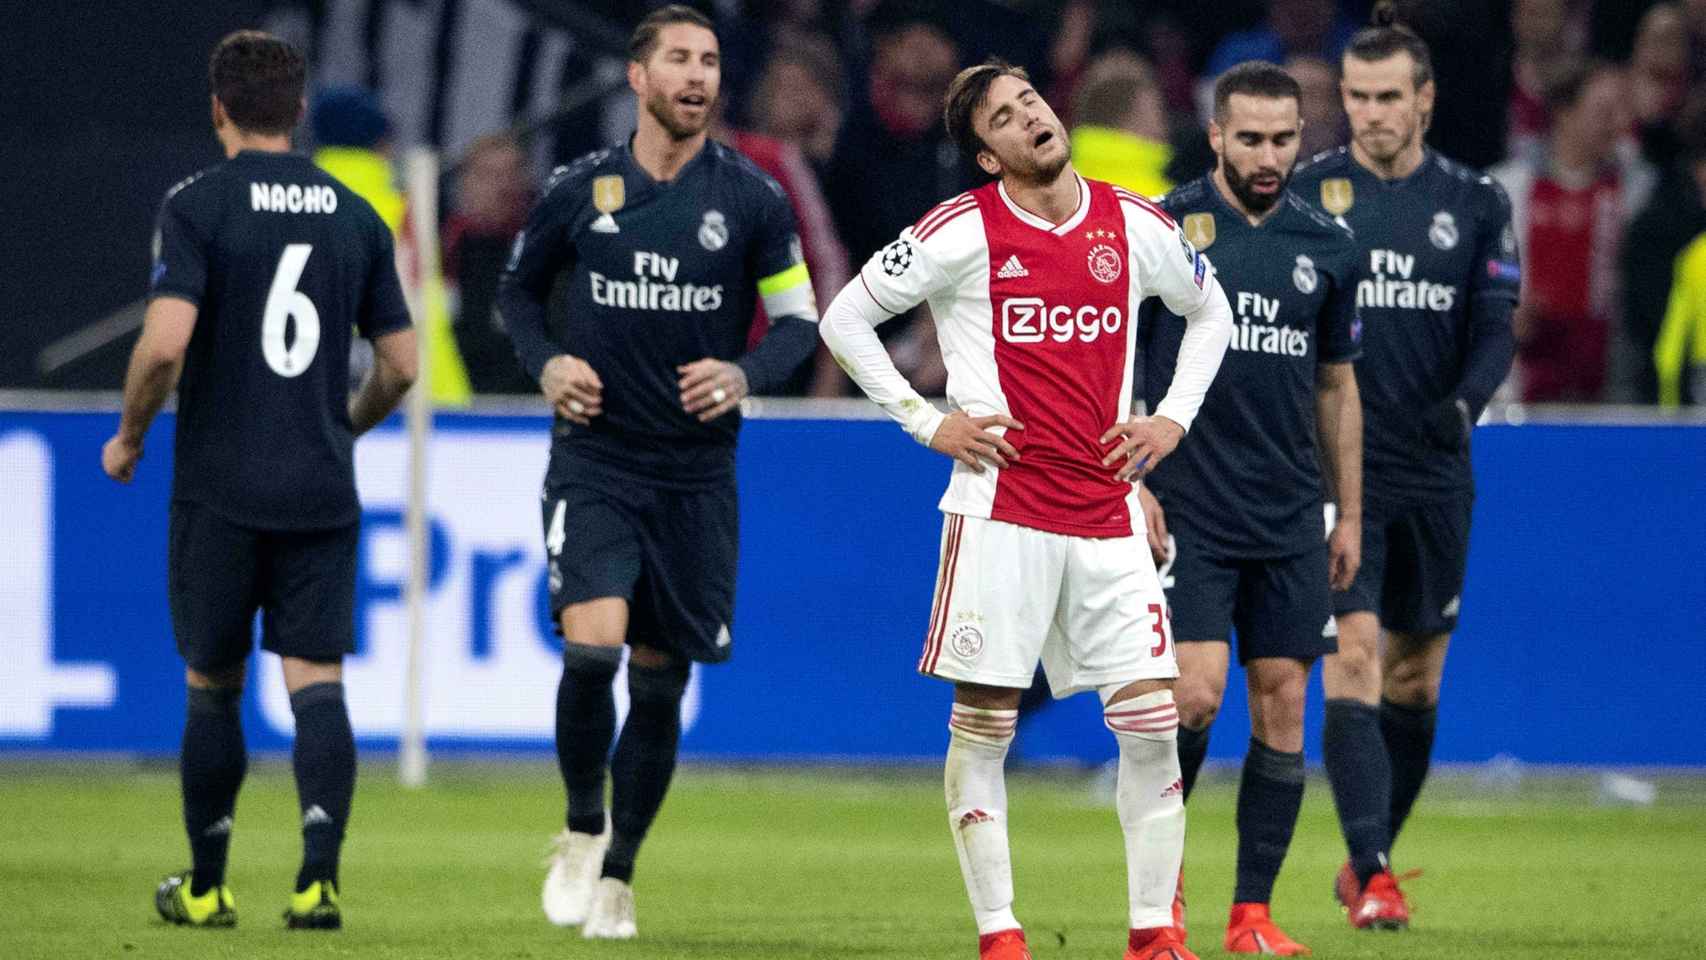 Ajax de Ámsterdam-Real Madrid, en el partido de ida de los octavos de final de la Champions League.